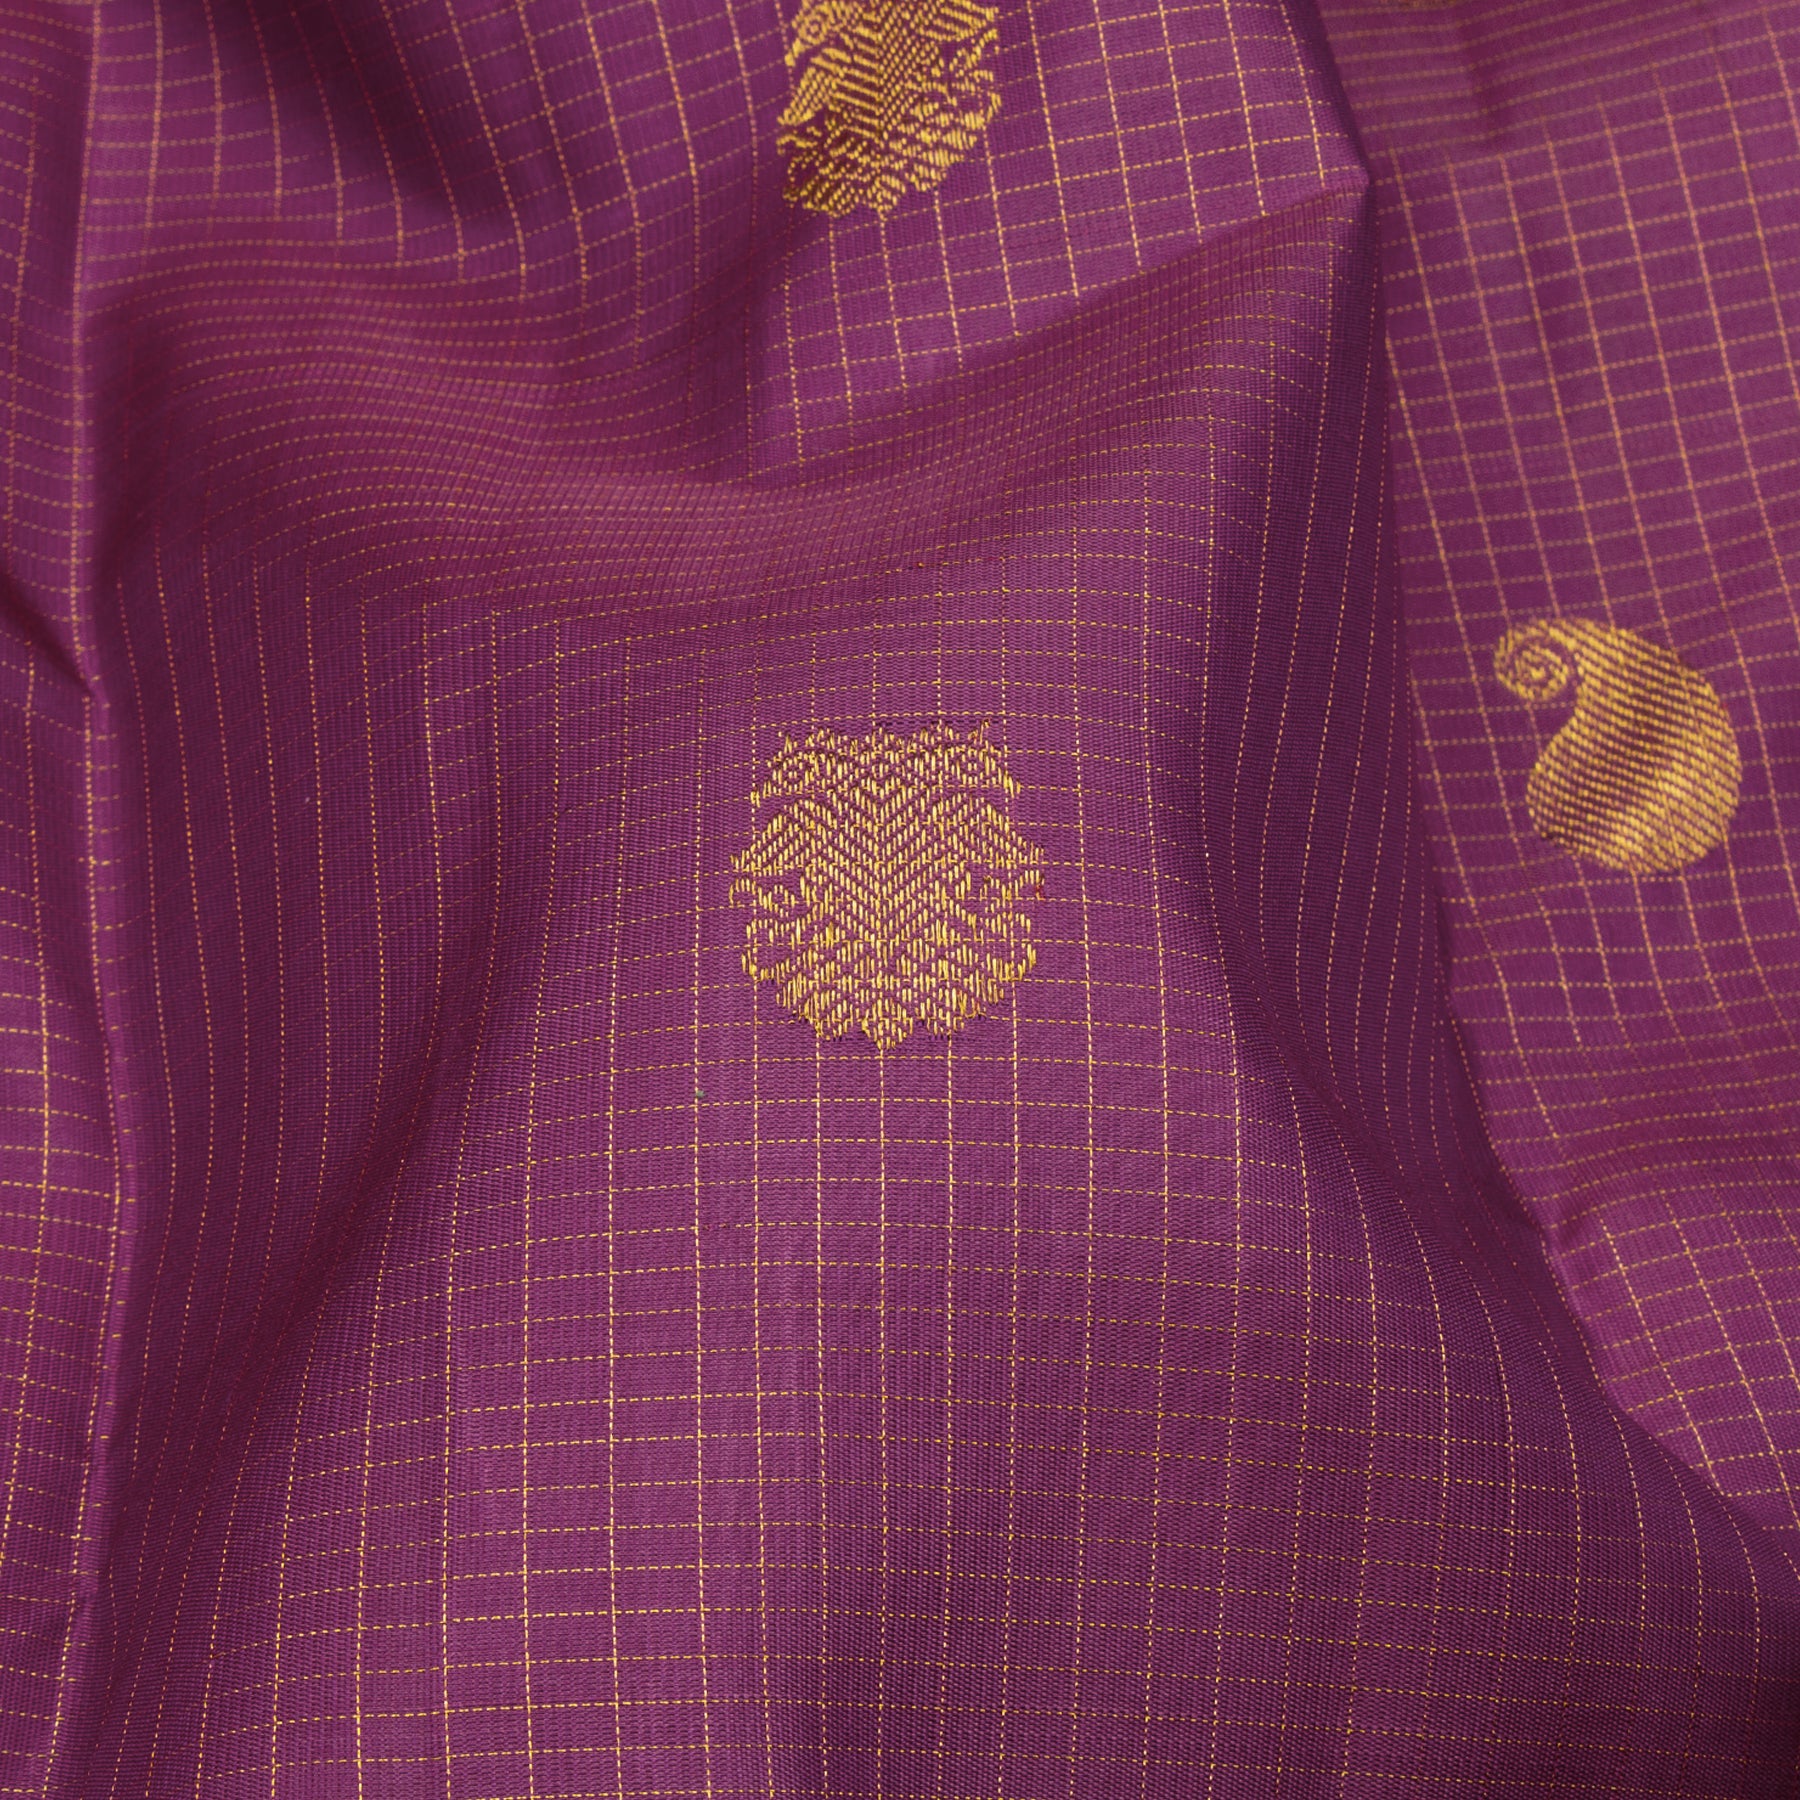 Kanakavalli Kanjivaram Silk Sari 23-599-HS001-14386 - Fabric View